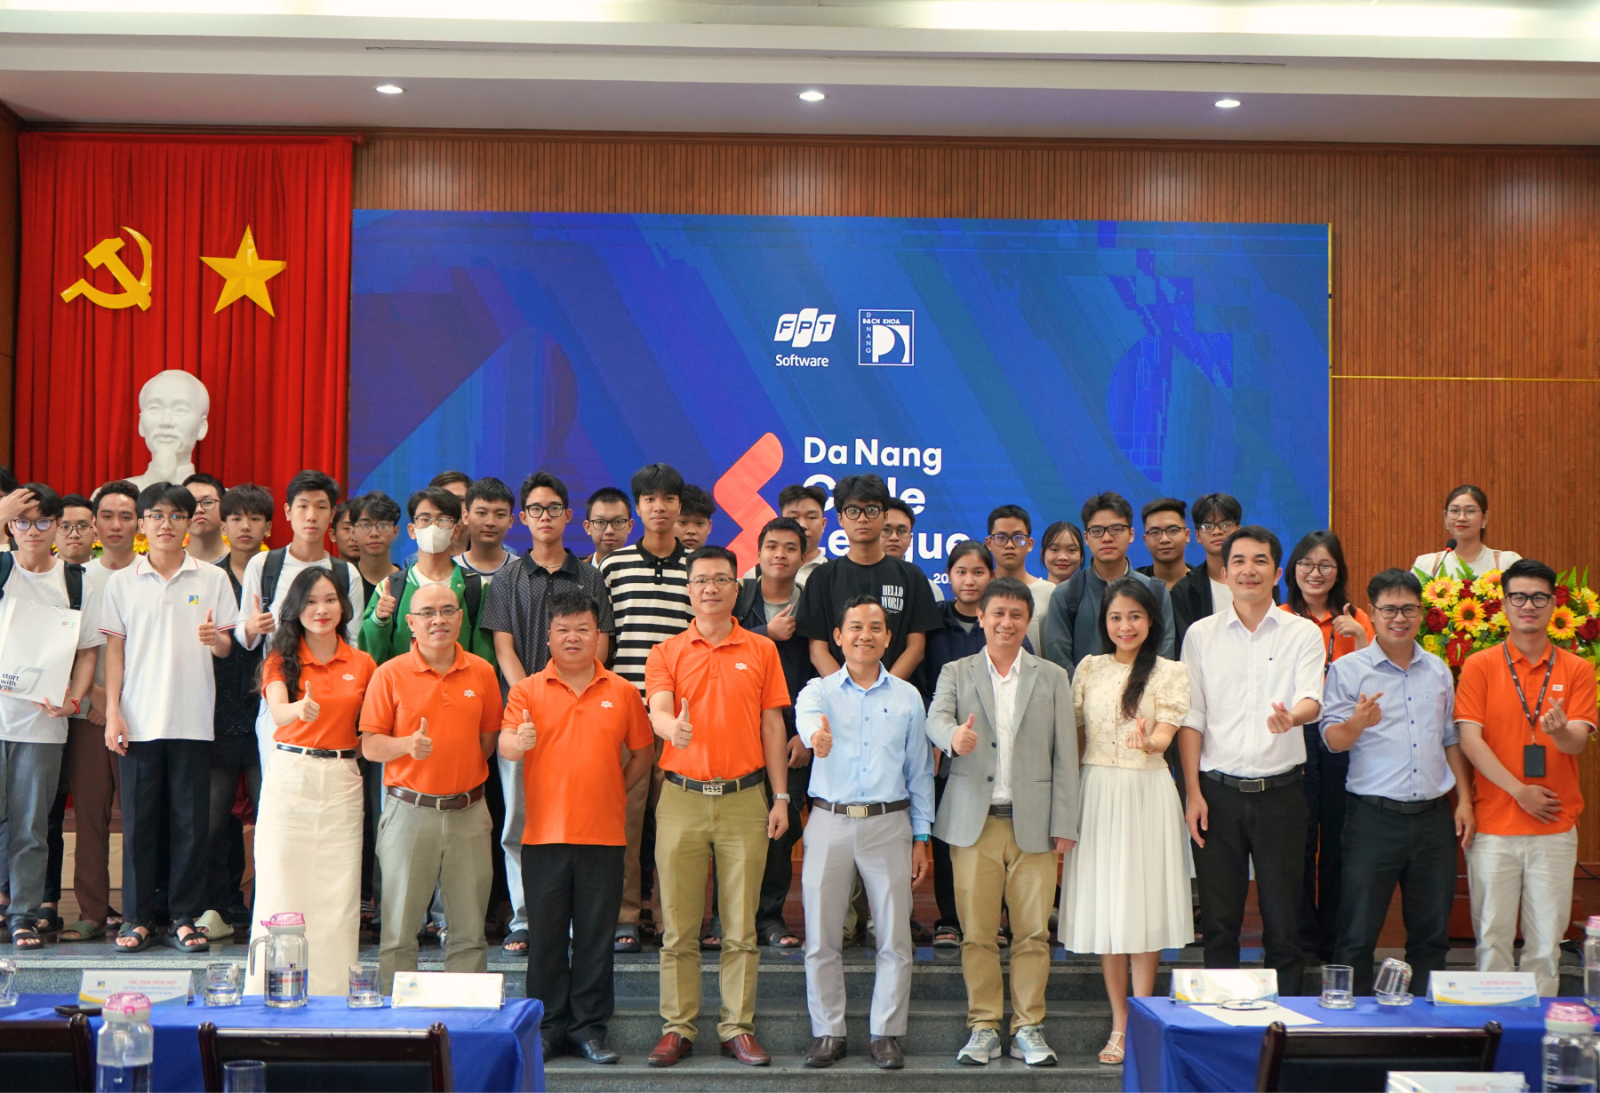 Sự kiện ra mắt giải đấu tại đại học Bách Khoa - Da Nang Code League 2024 (ảnh FPT Software)